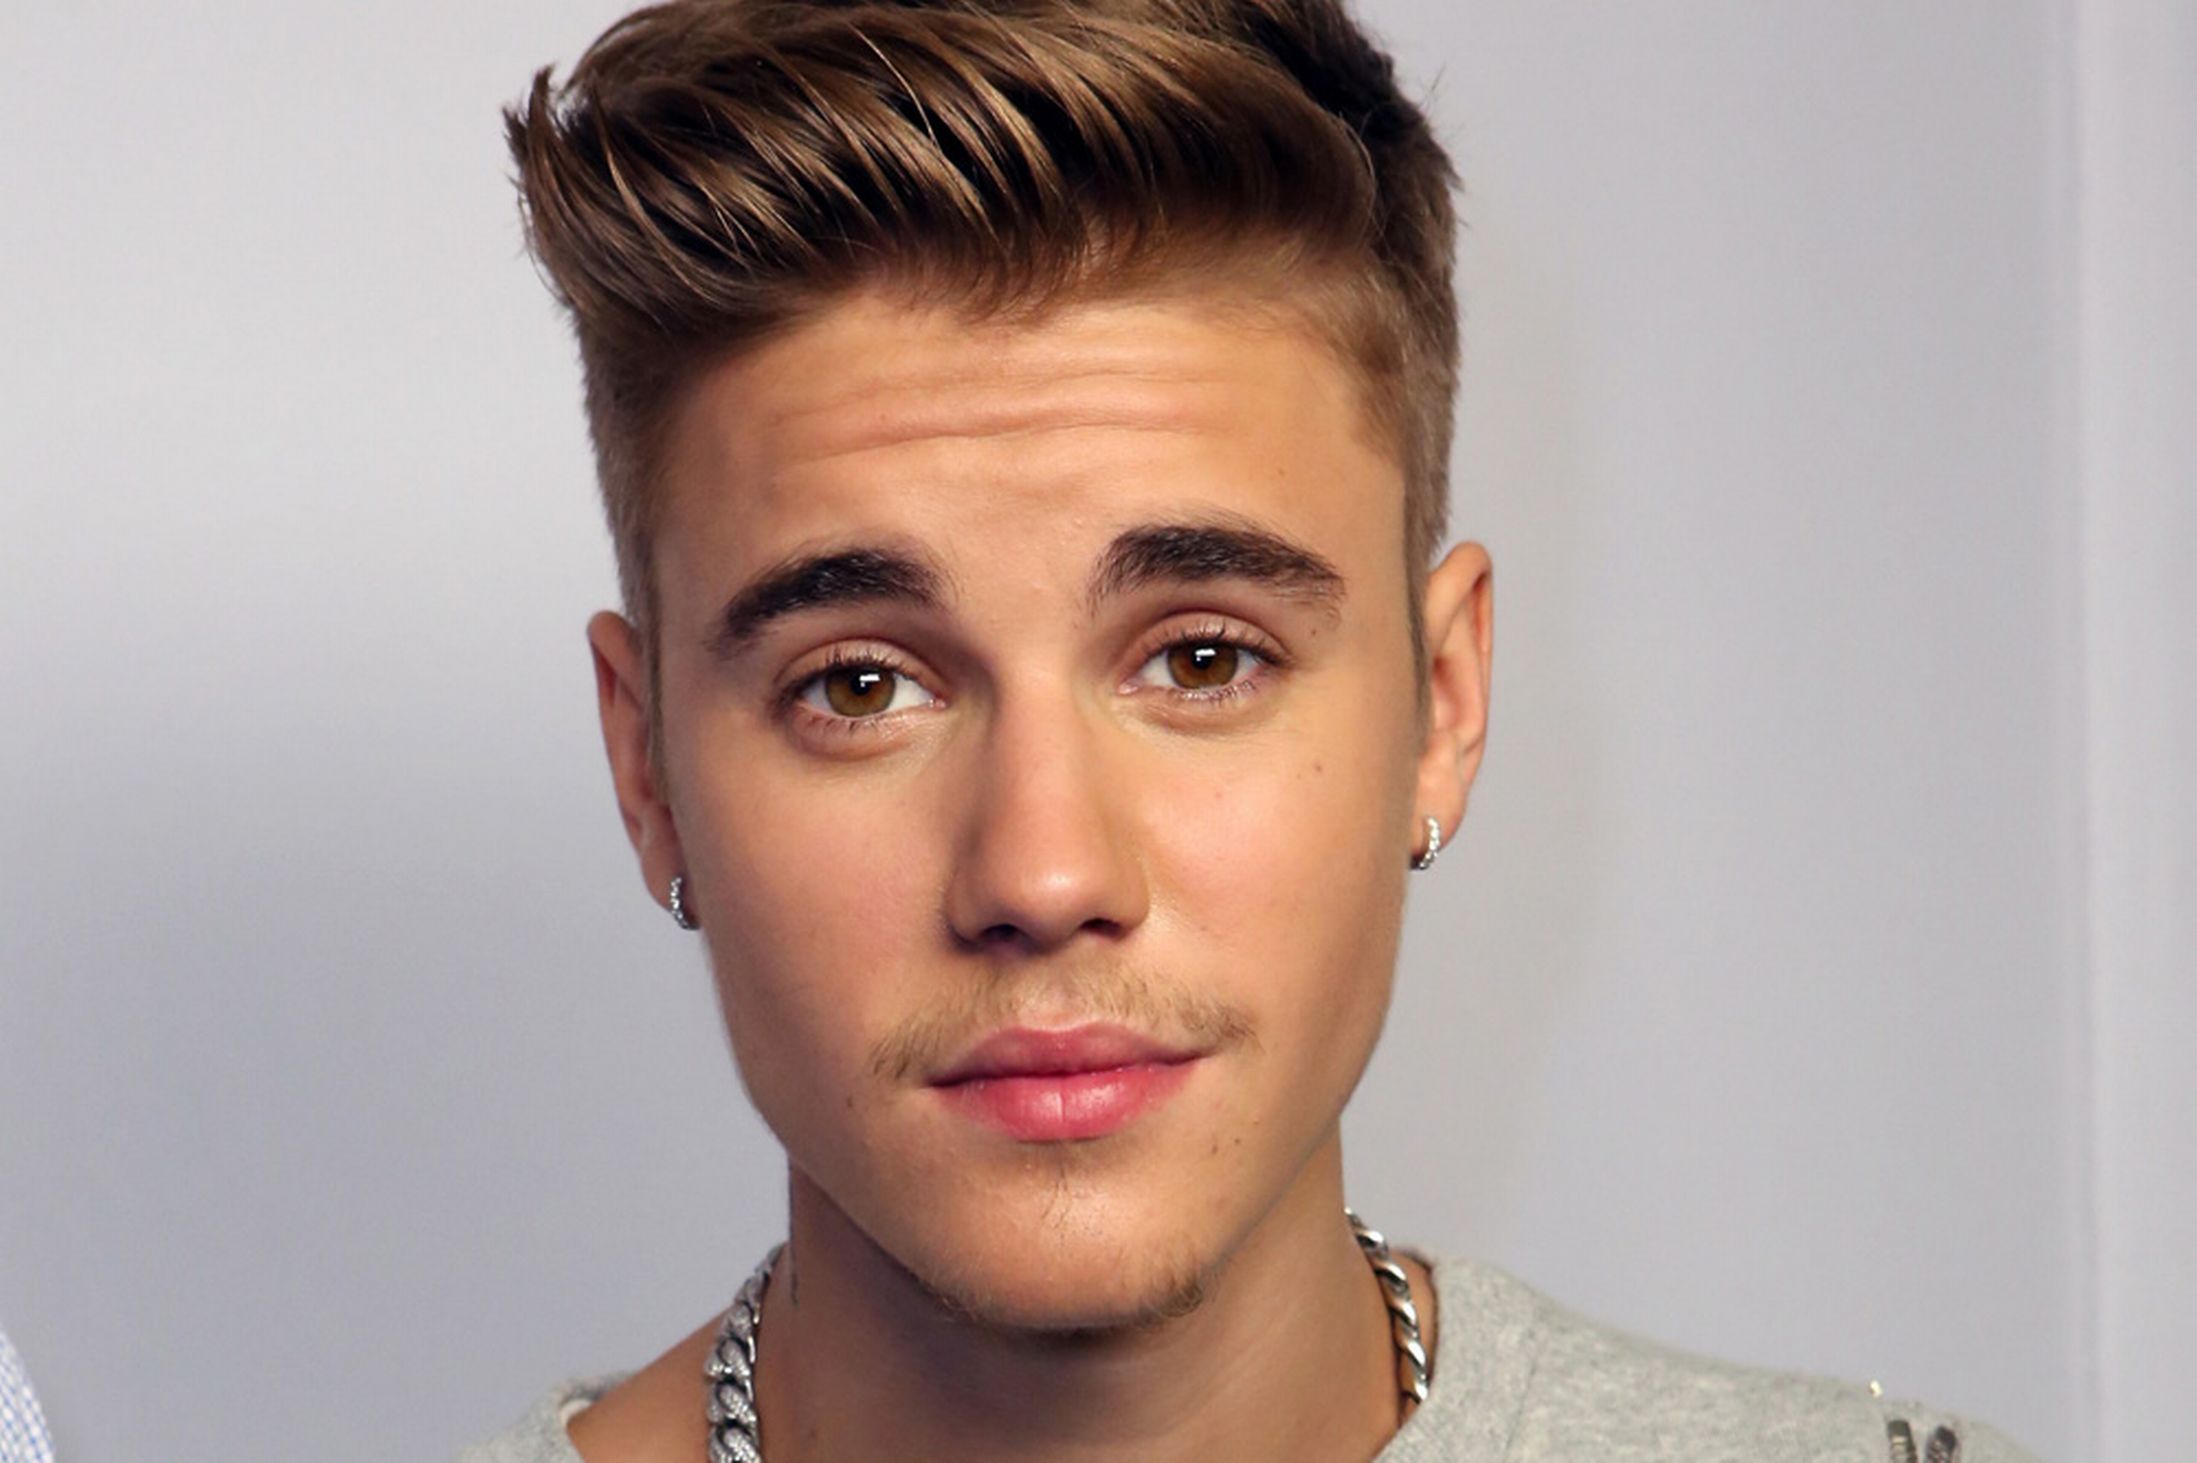 El radical cambio de imagen de Justin Bieber (Foto)